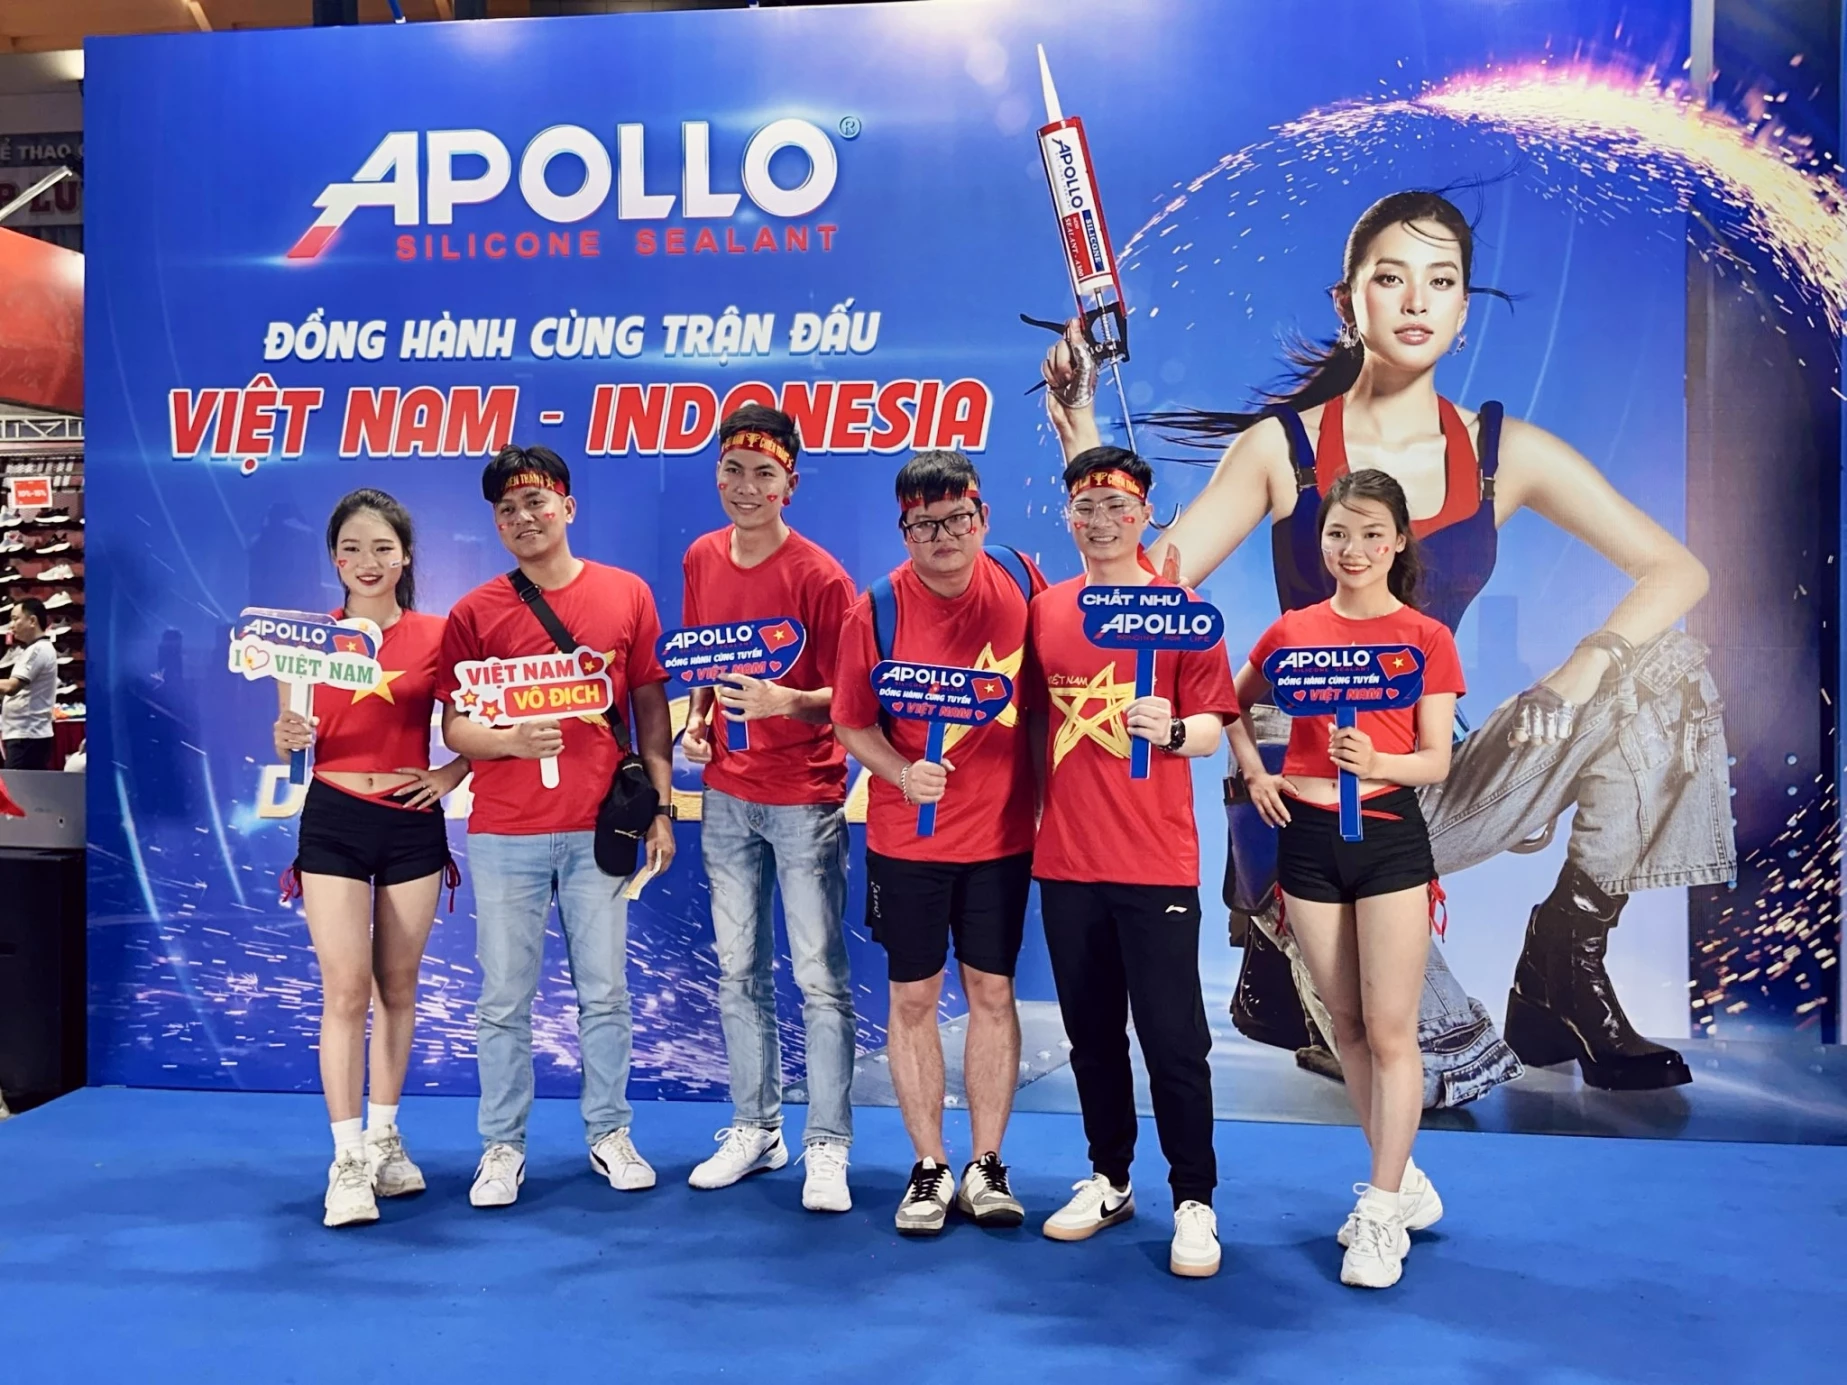 Apollo Silicone đồng hành cùng đội tuyển Việt Nam: Sức mạnh của thể thao để gắn kết mọi người